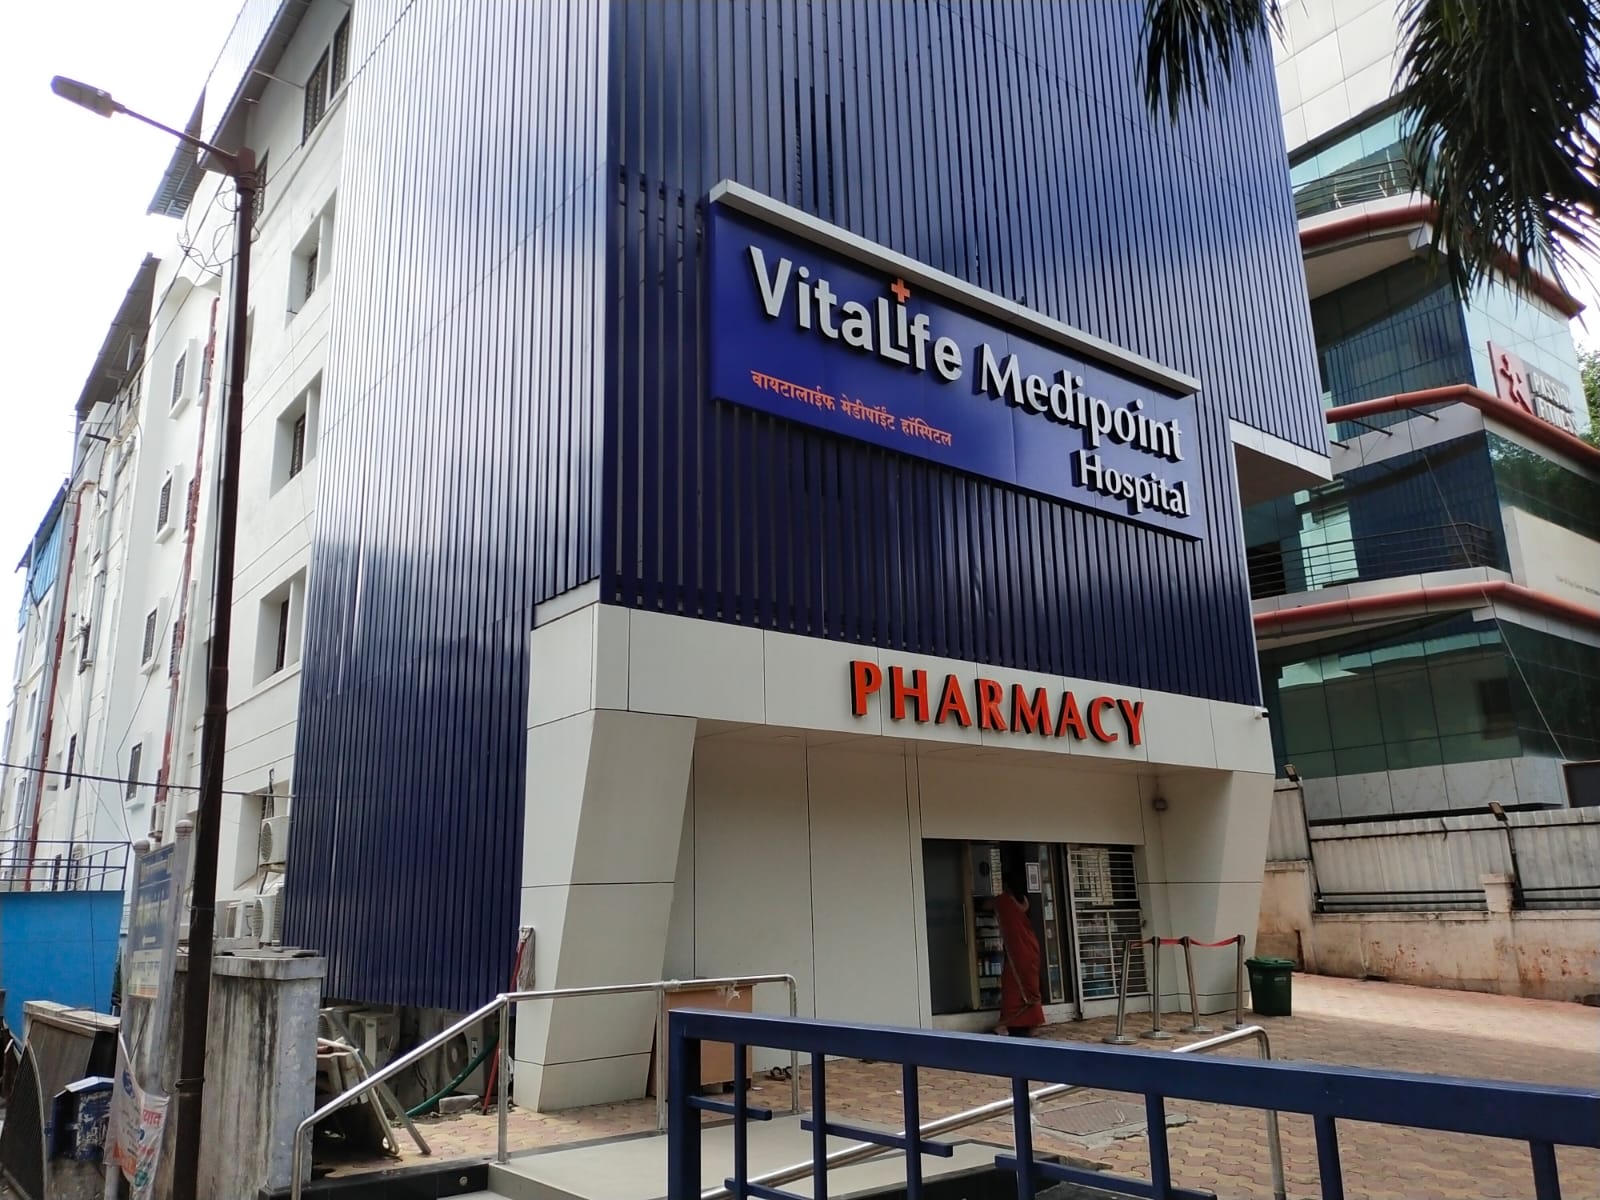 Vitalife Medipoint Hospital